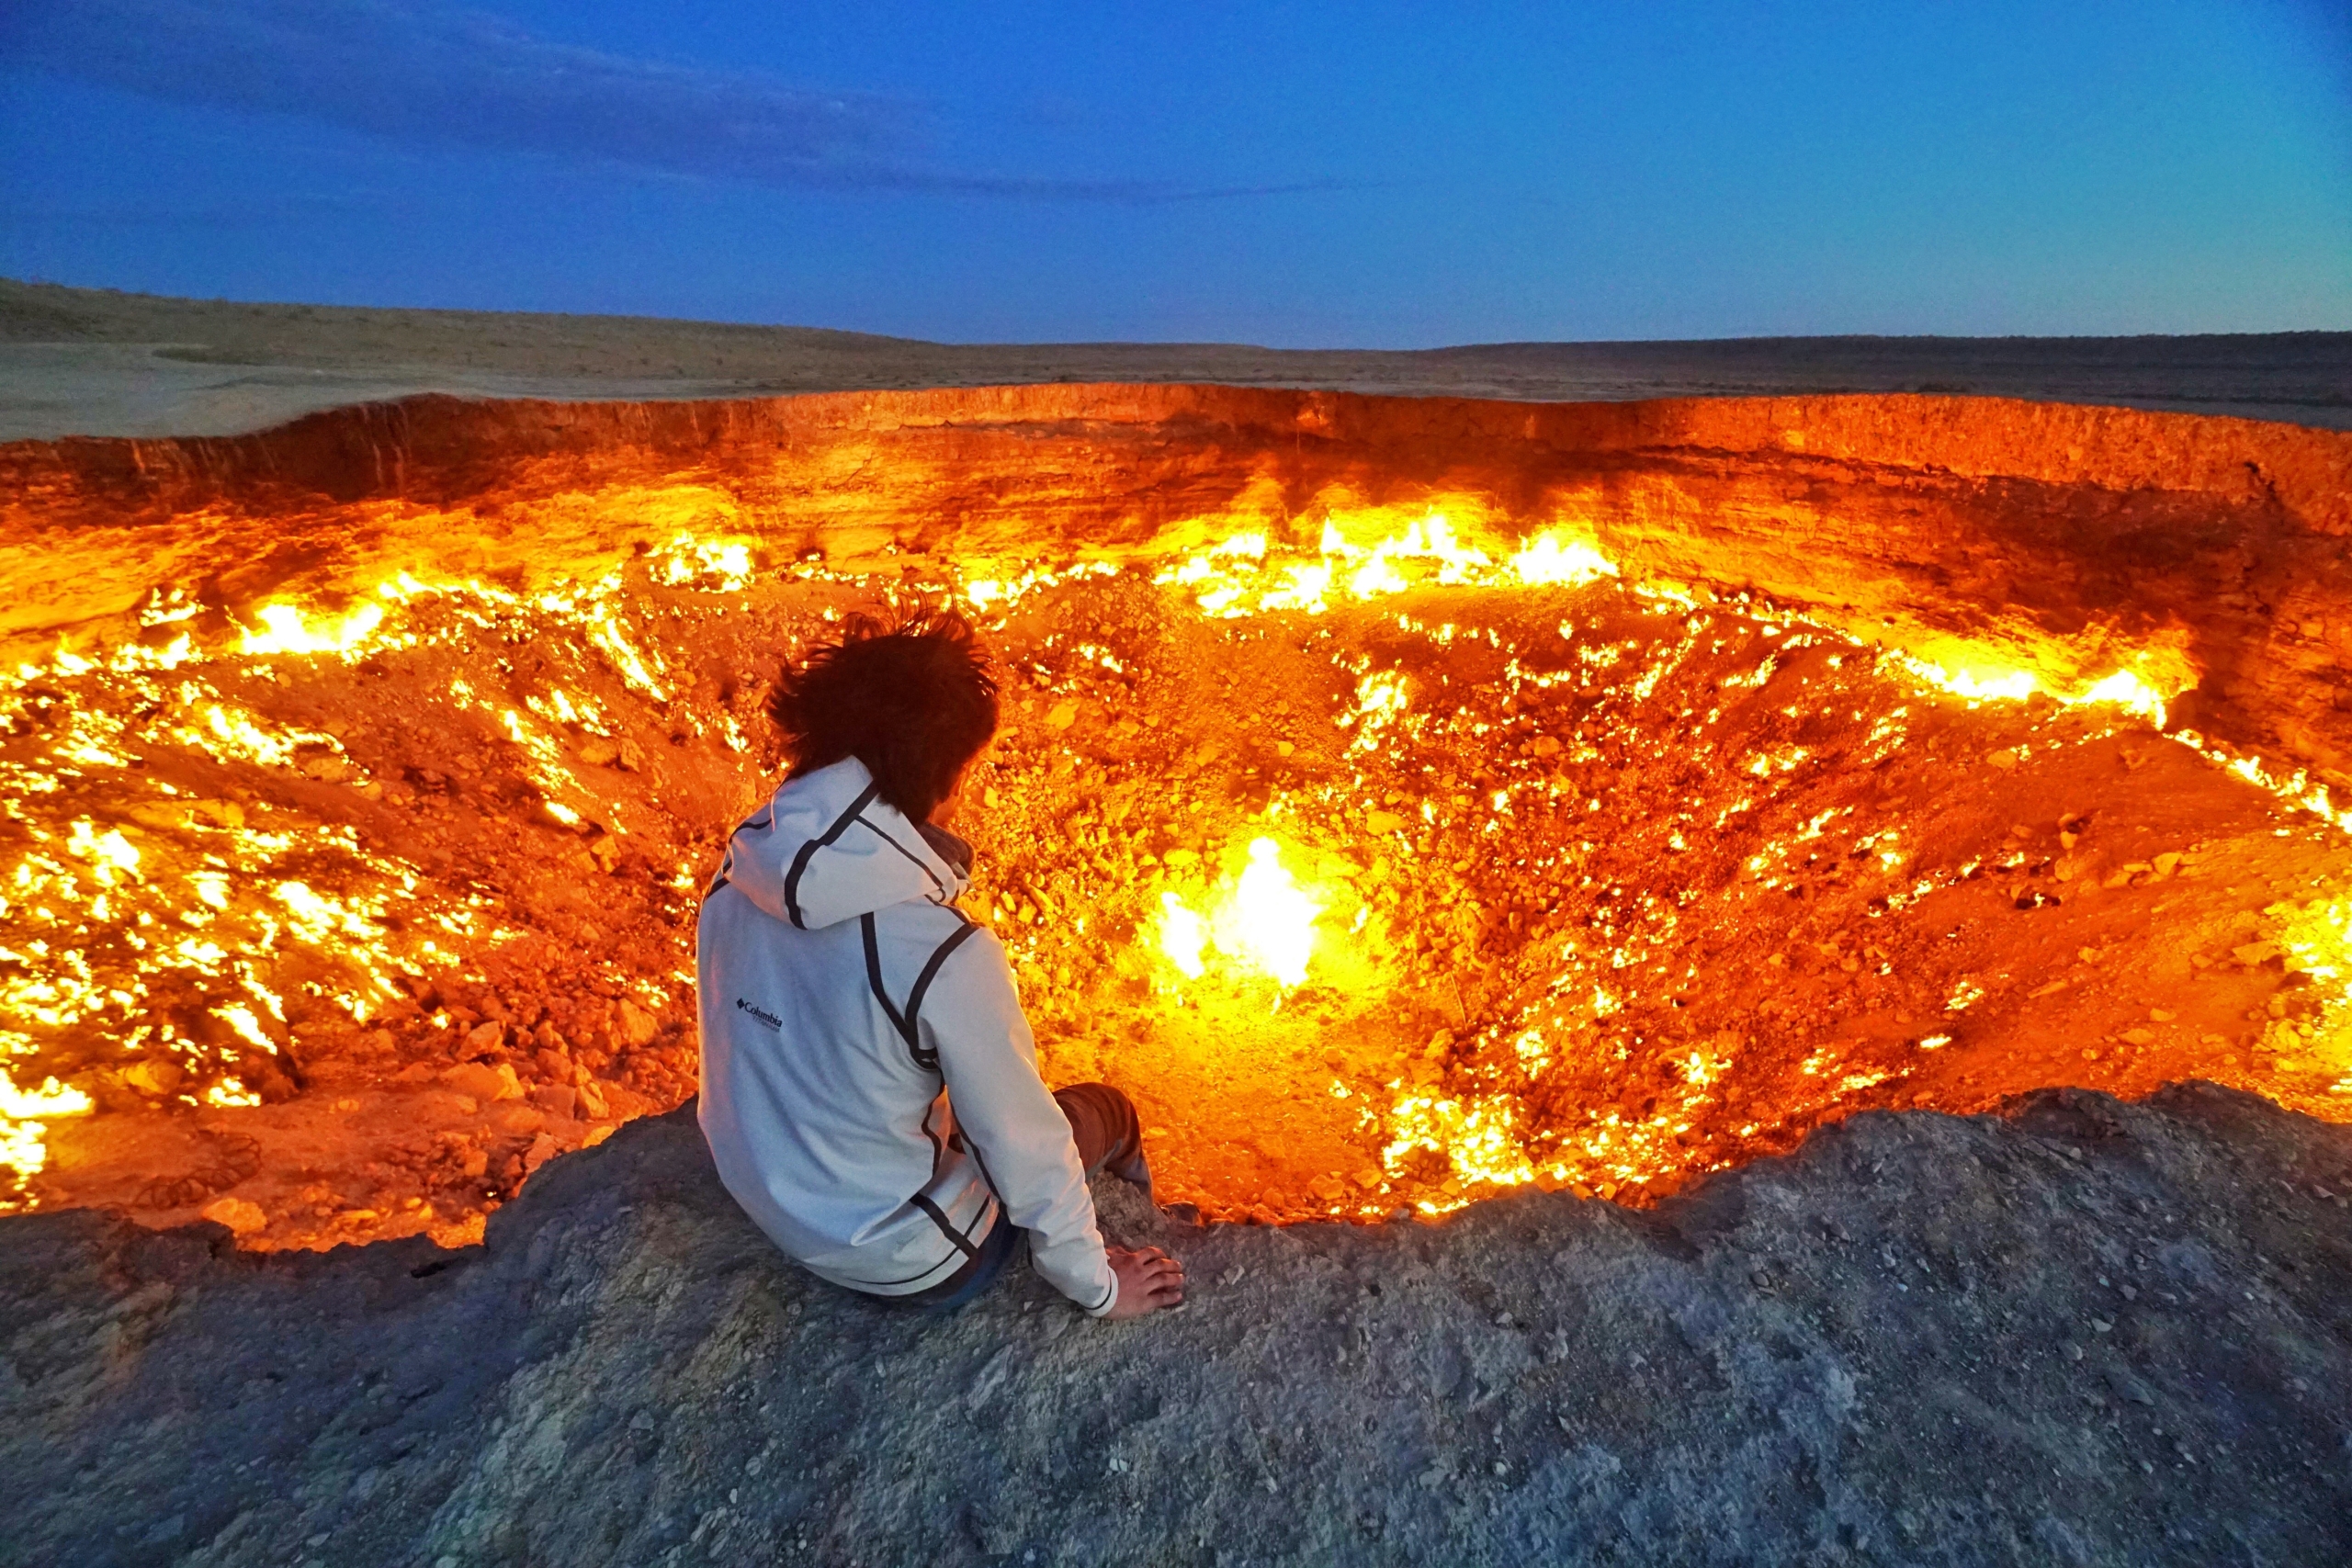 “Cổng địa ngục” là điểm thu hút khách du lịch nổi tiếng nhất ở Turkmen. (Ảnh: Shutterstock)